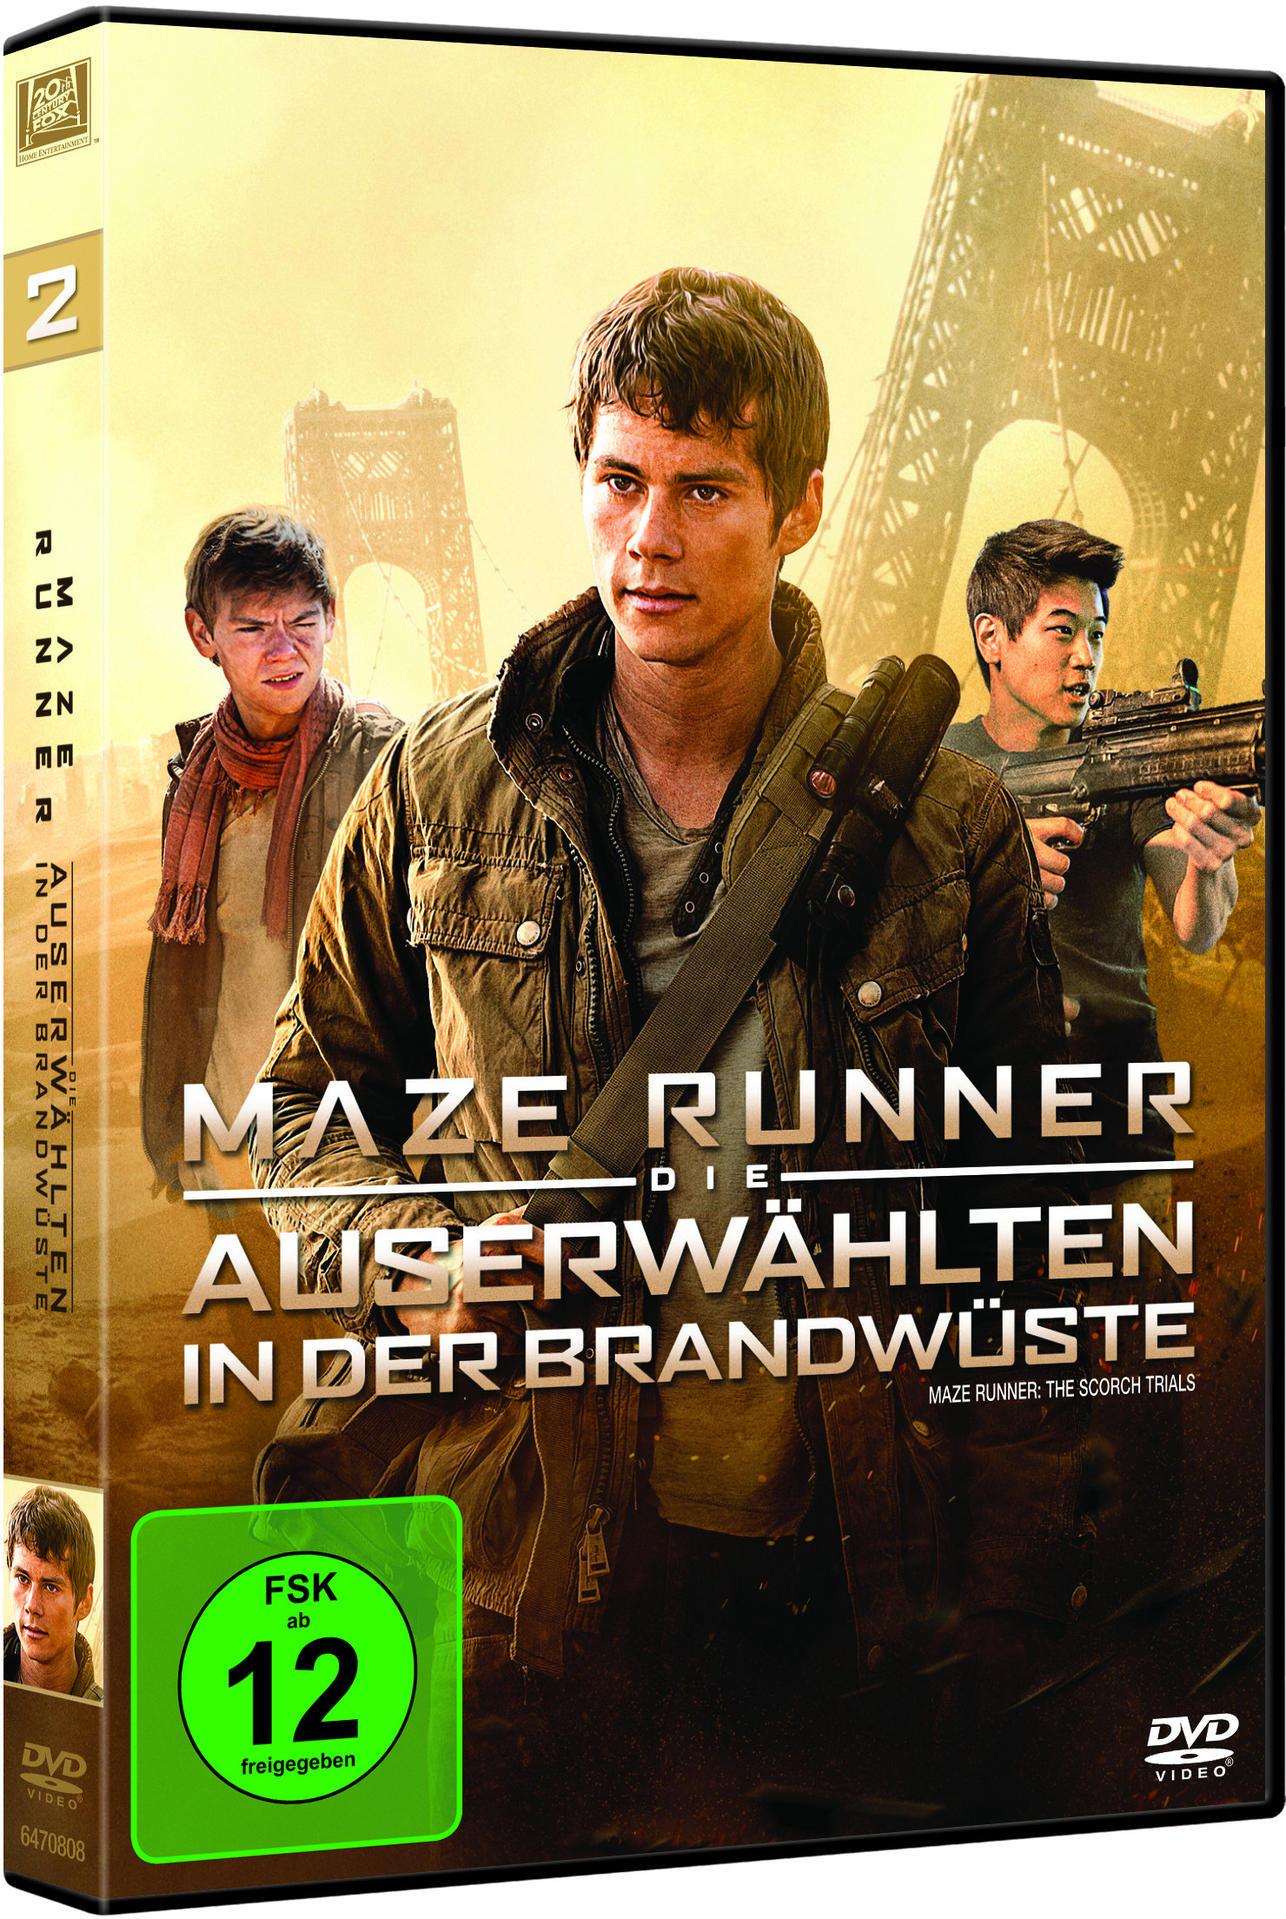 Maze Runner 2 Die Auserwählten der DVD Brandwüste in 